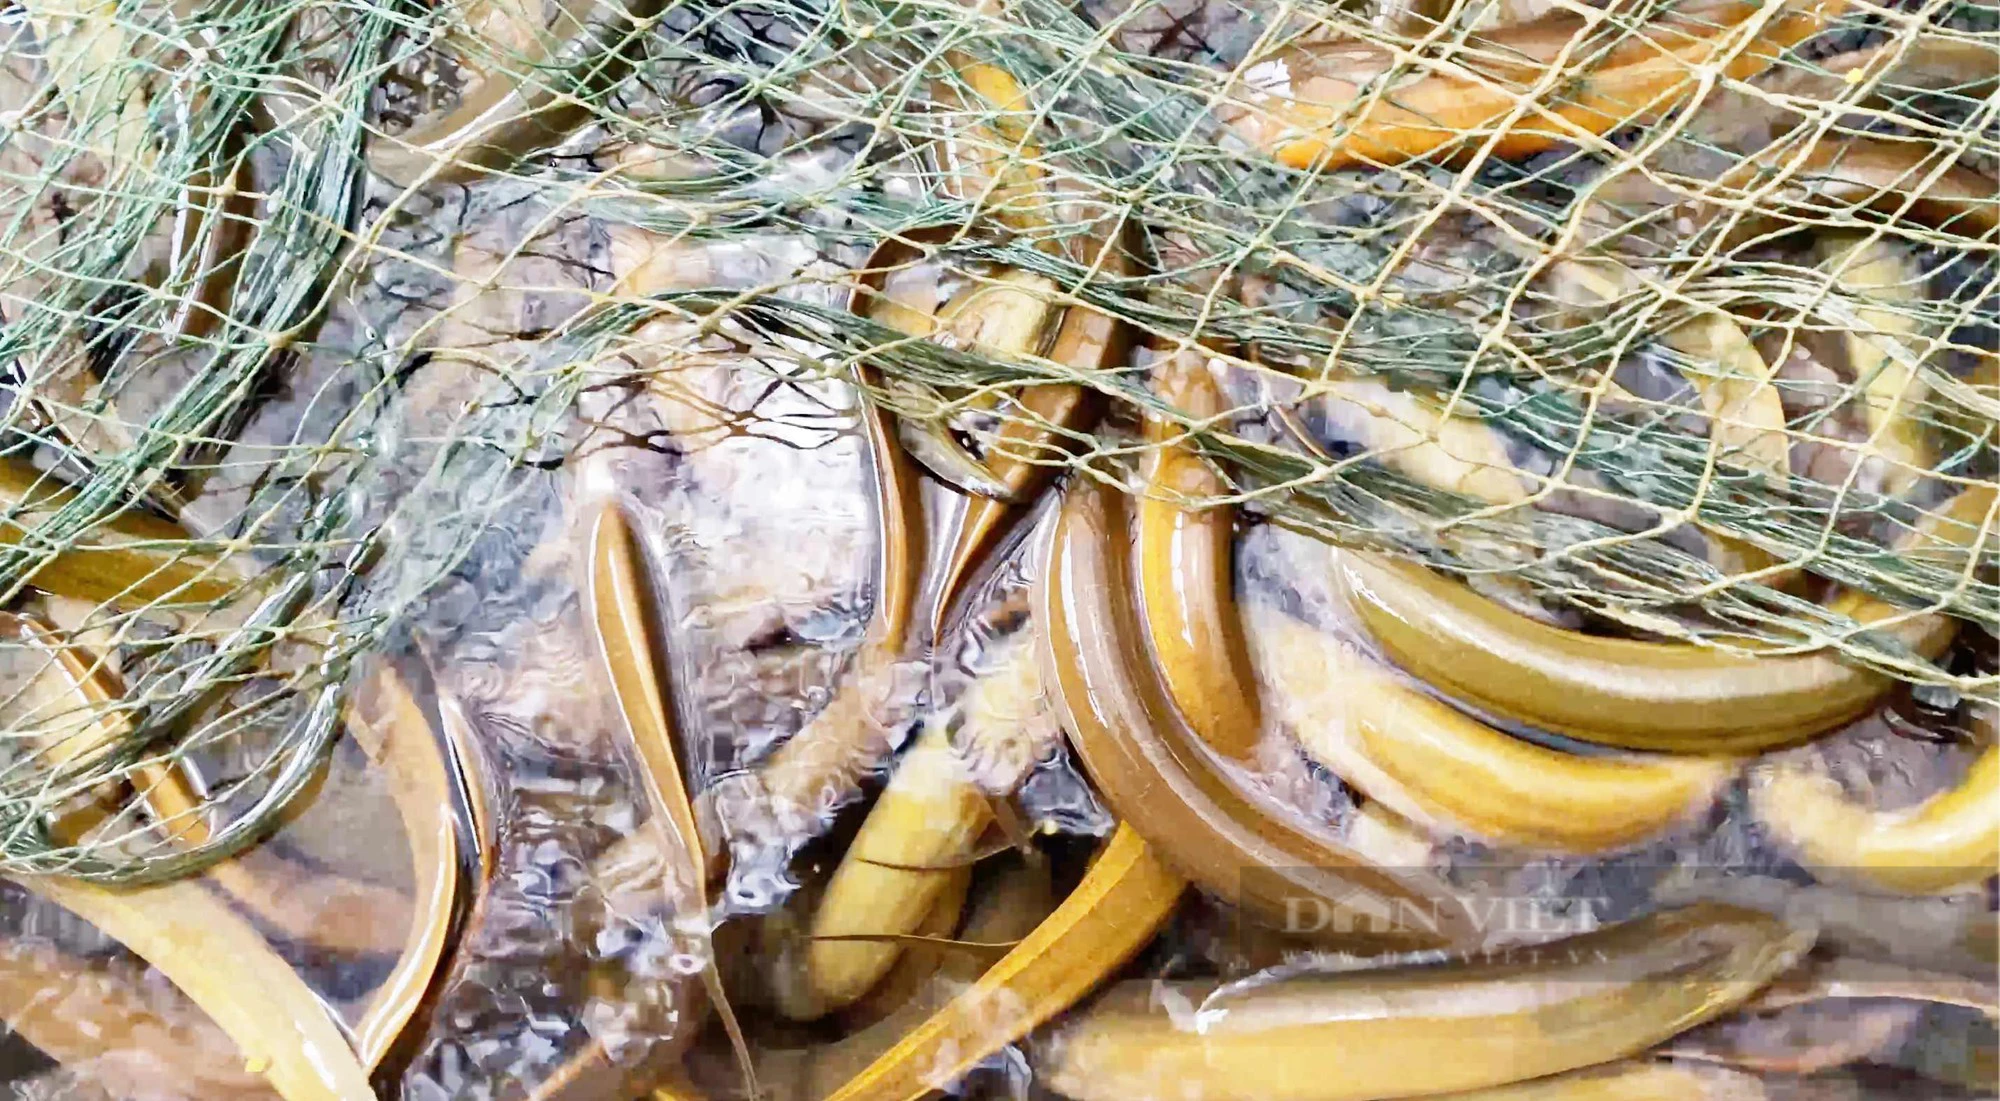 Chàng trai Cần Thơ nuôi lươn sạch, con nào cũng mau lớn, thu lãi hơn 500 triệu đồng/năm - Ảnh 2.